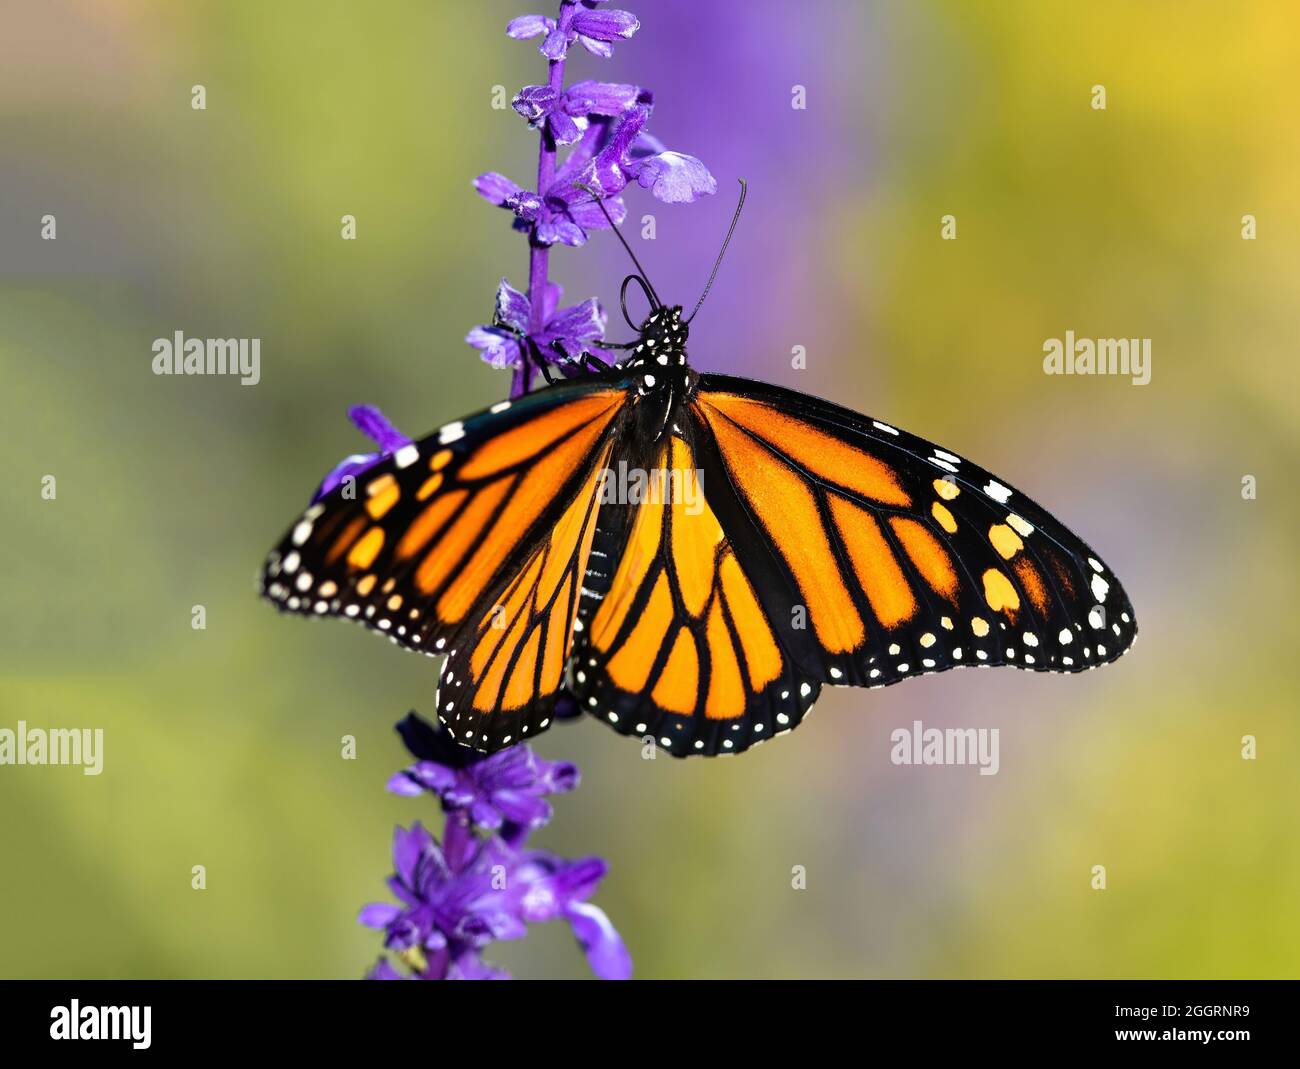 Nahaufnahme eines Monarchen-Schmetterlings mit geöffneten Flügeln und gekräuselten Zungen, die einen Lavendel-Blütenstiel mit weichem Hintergrund hochbewegen. Stockfoto